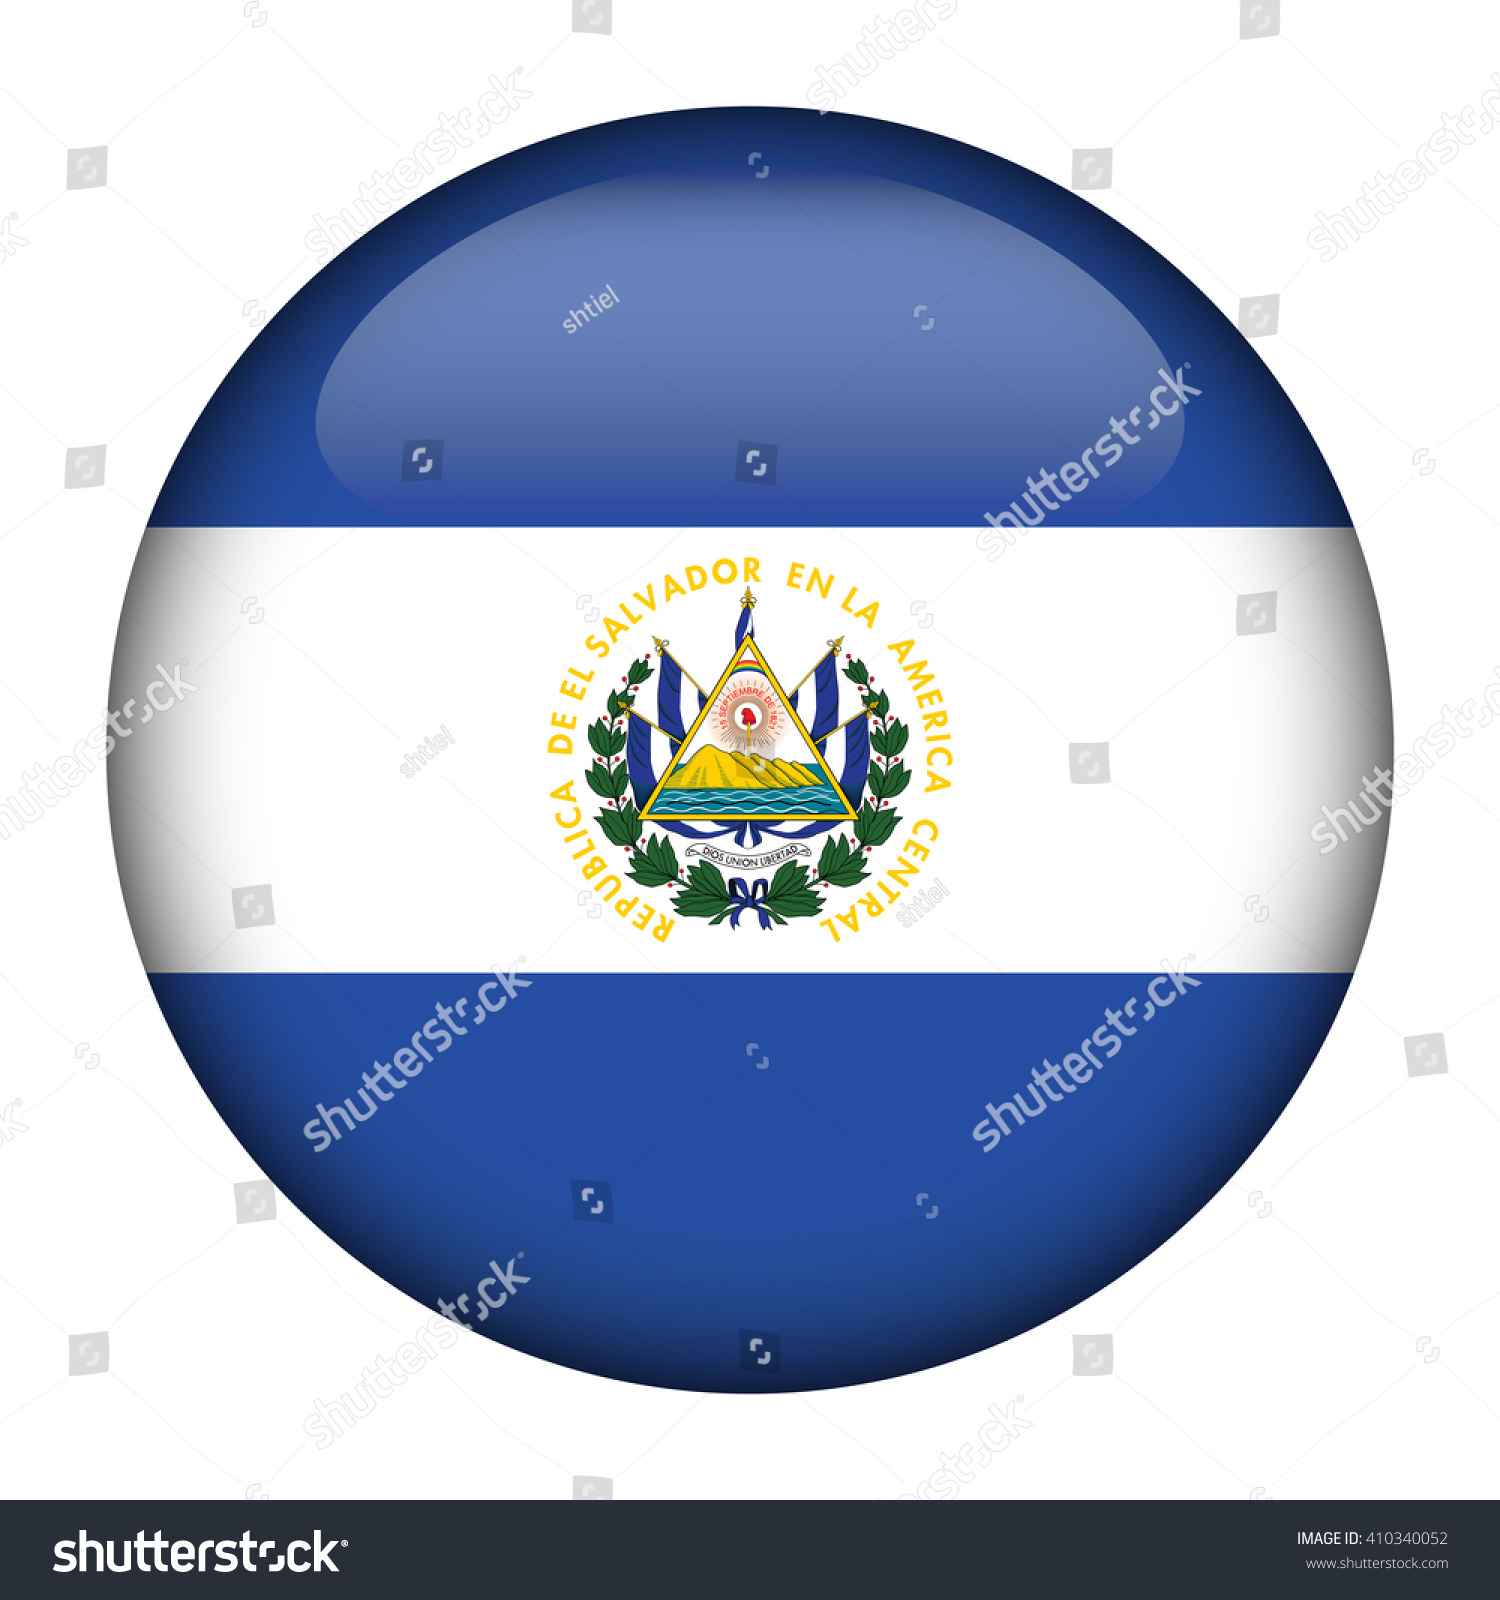 589 El salvador circle flag Images, Stock Photos & Vectors | Shutterstock